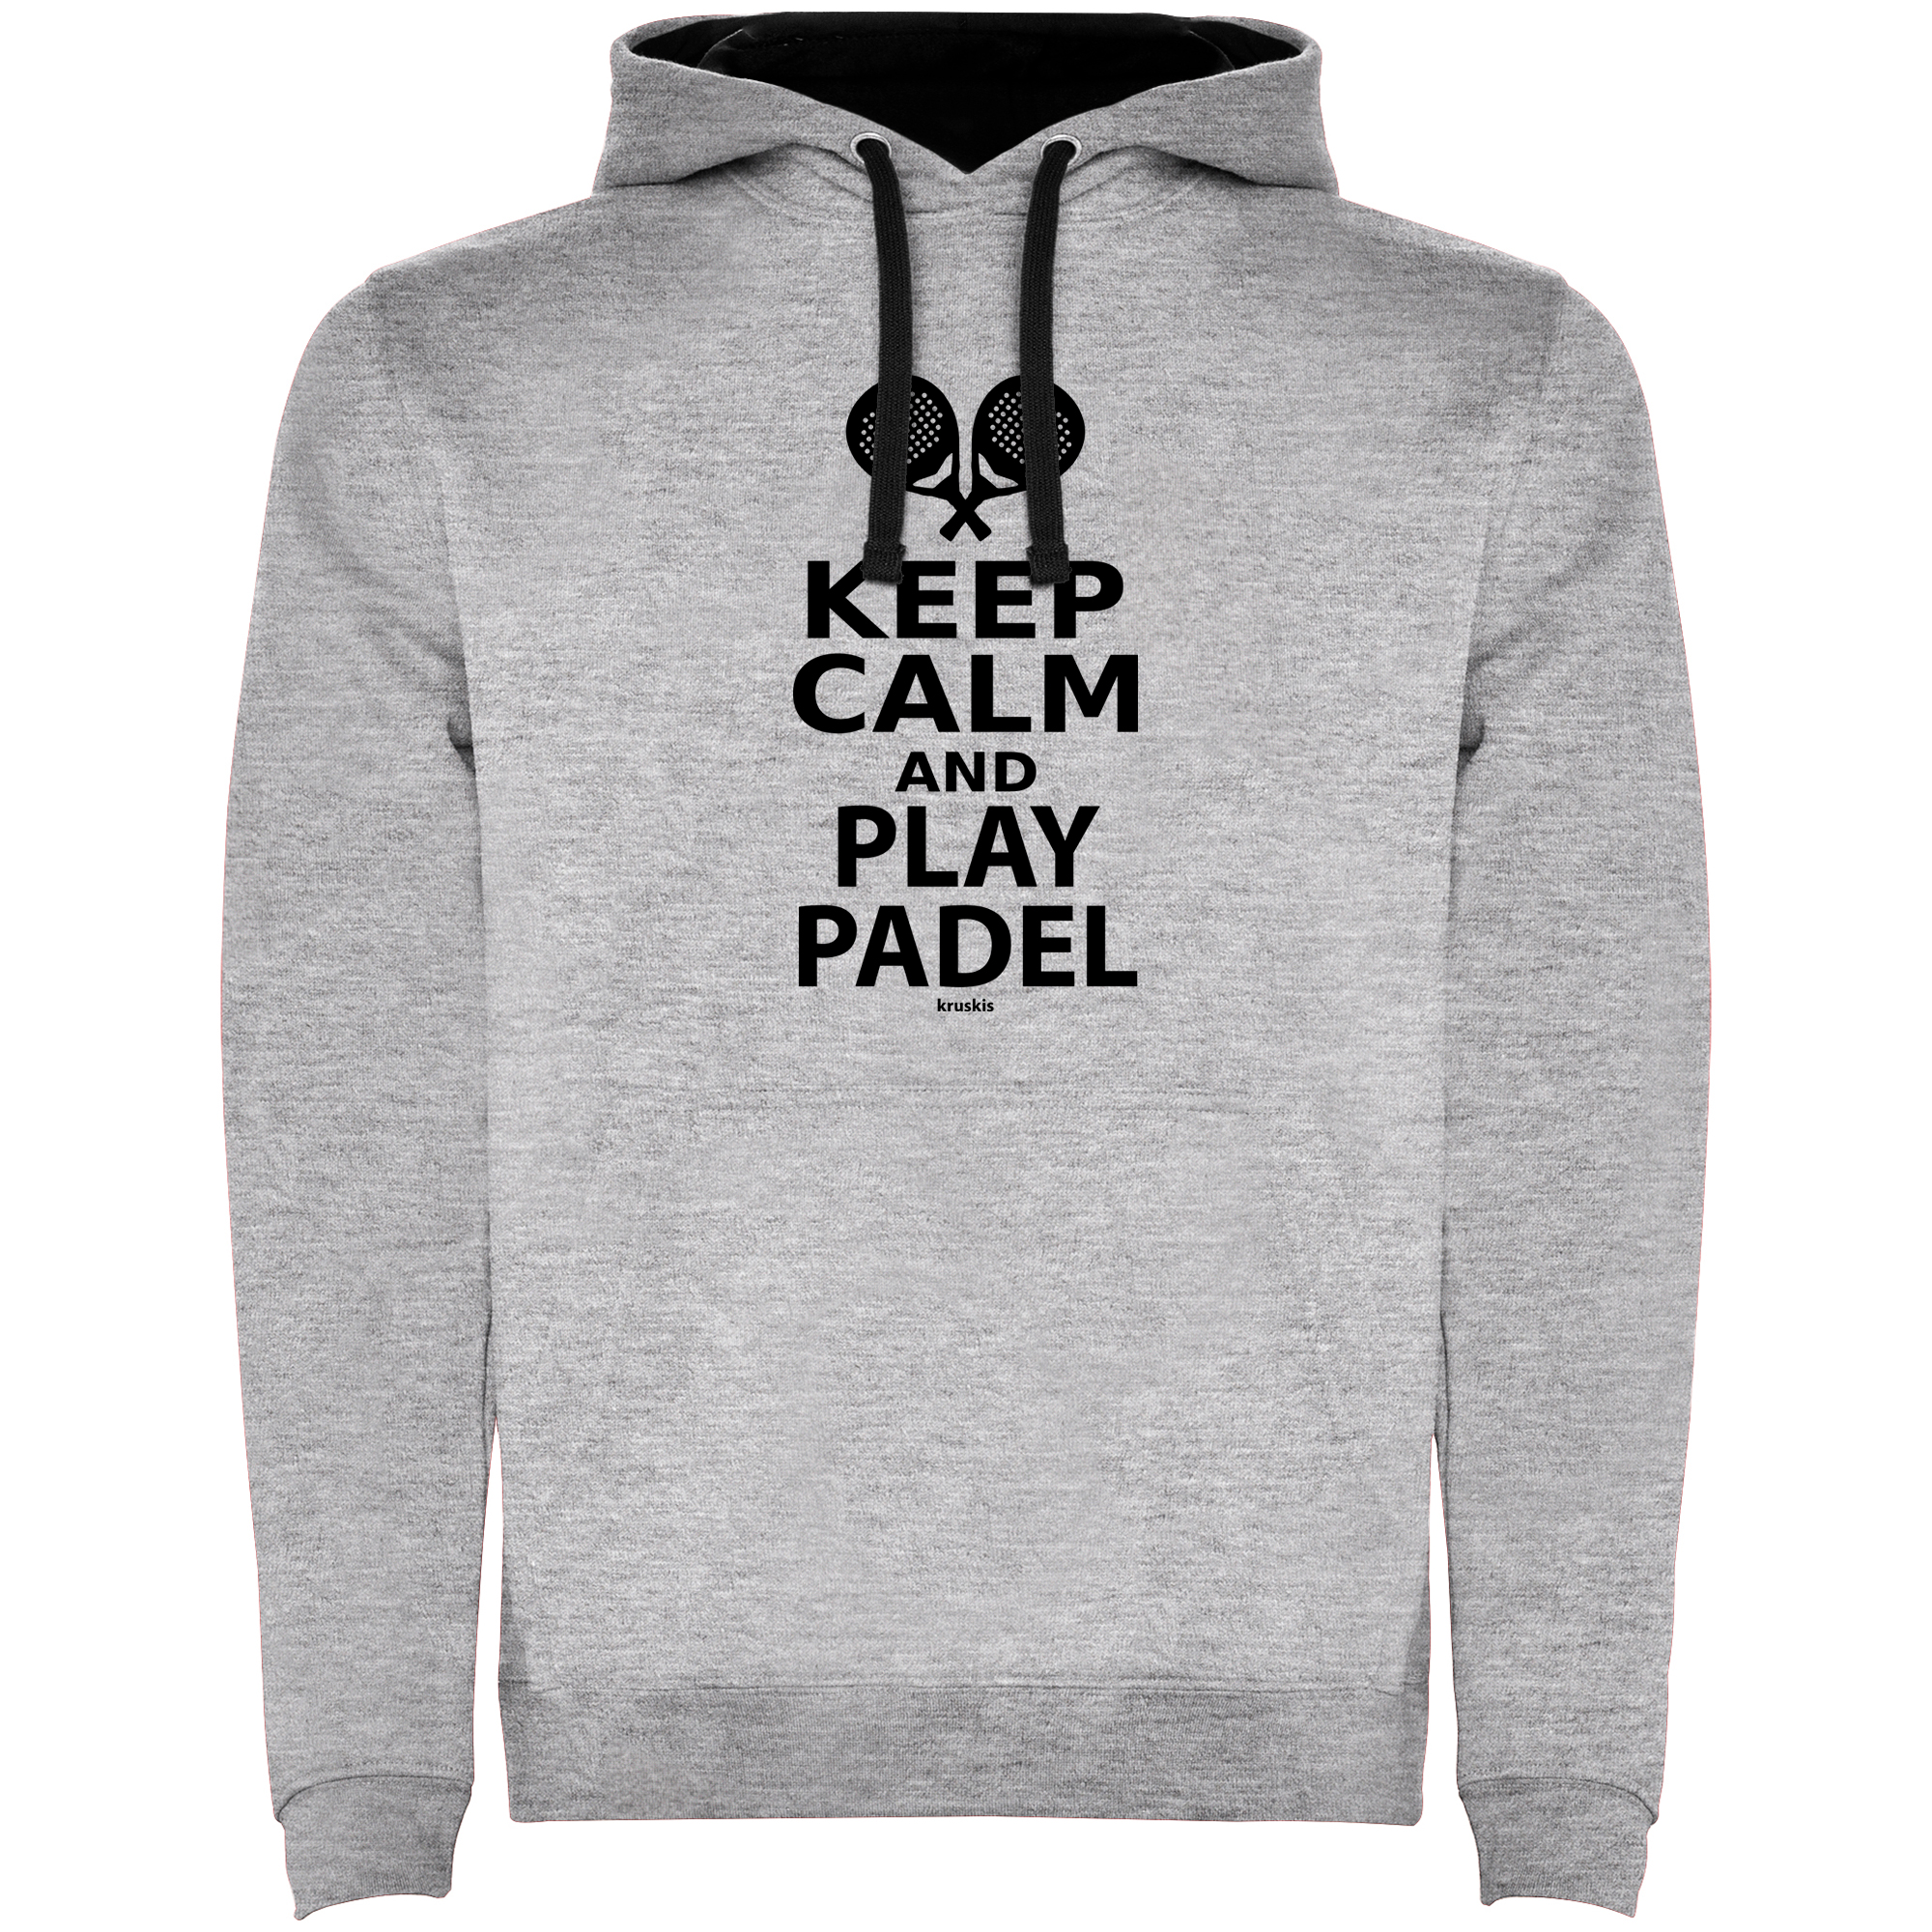 Sudadera Padel Keep Calm and Play Padel Unisex